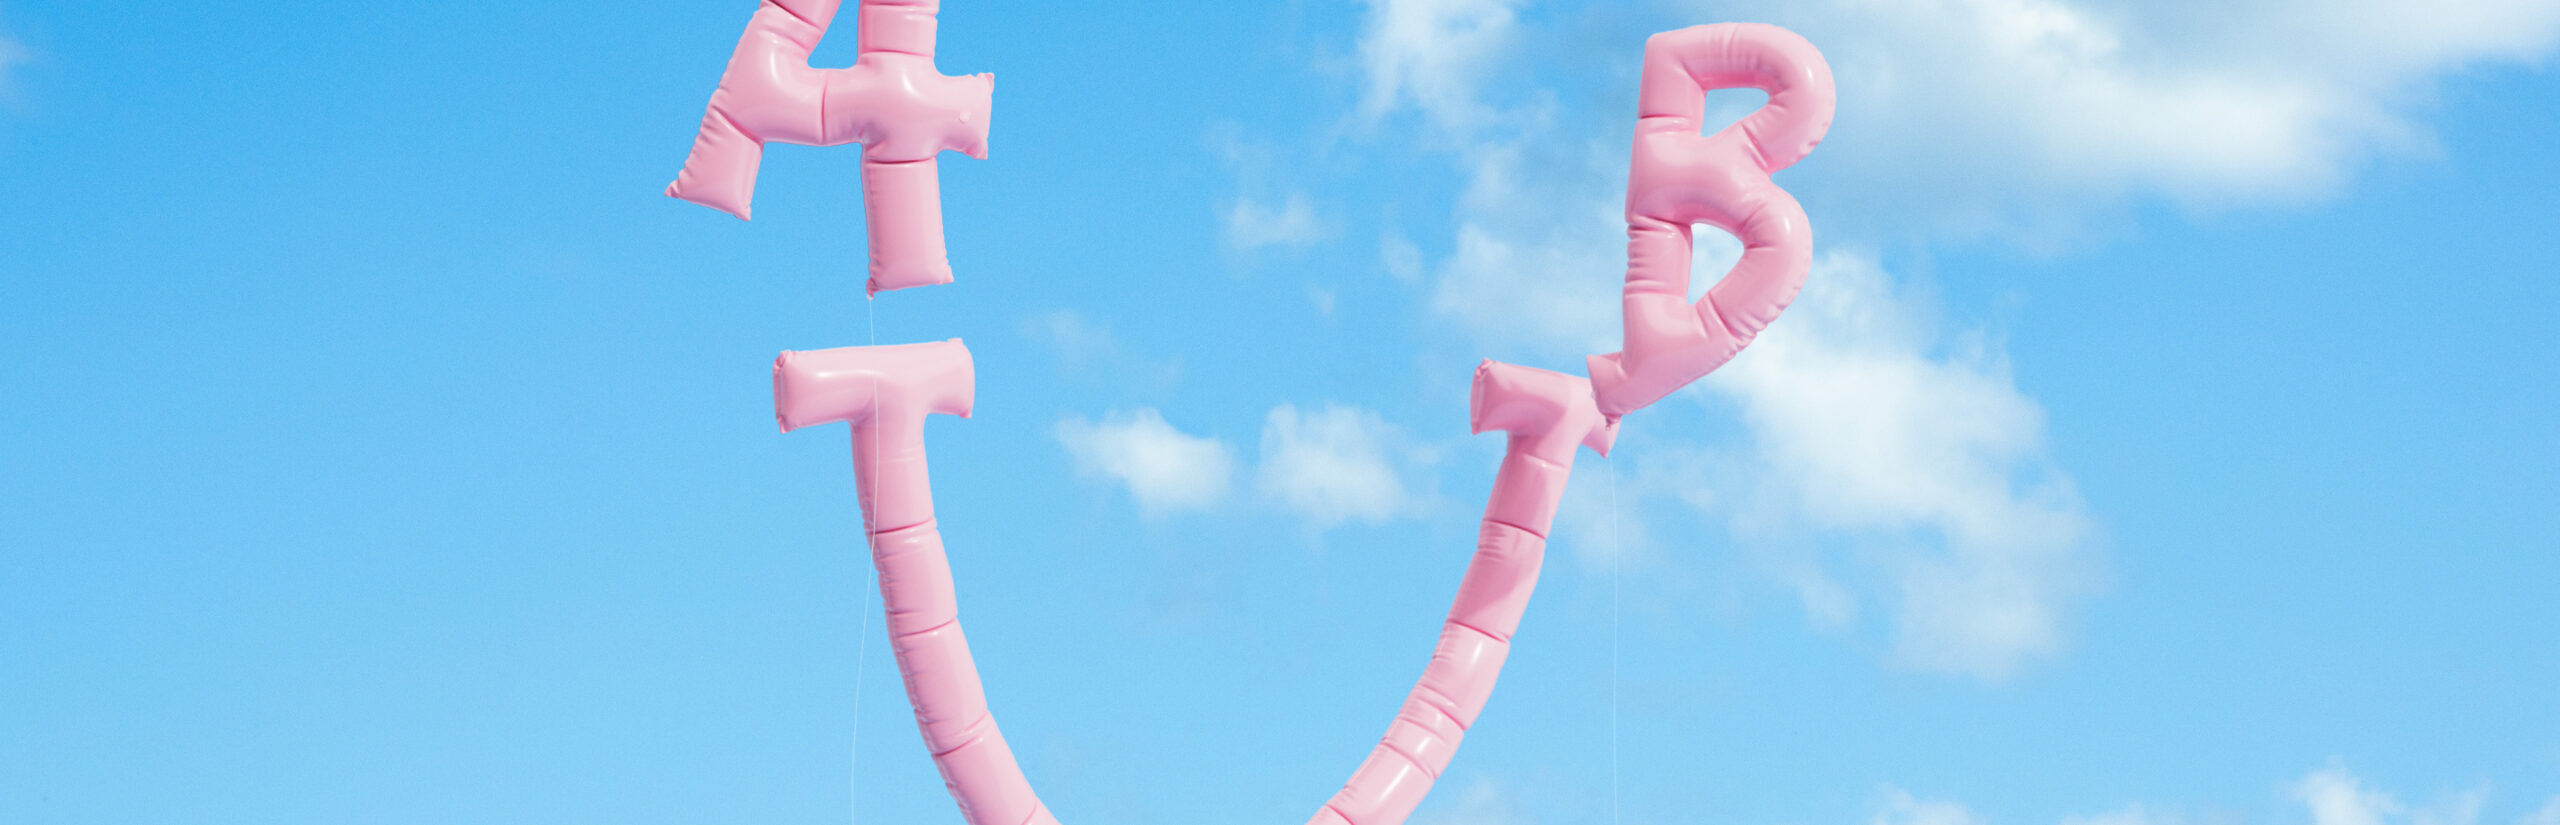 Un frisbee rosa con pegatinas de Incharge volando a través de un cielo azul claro.